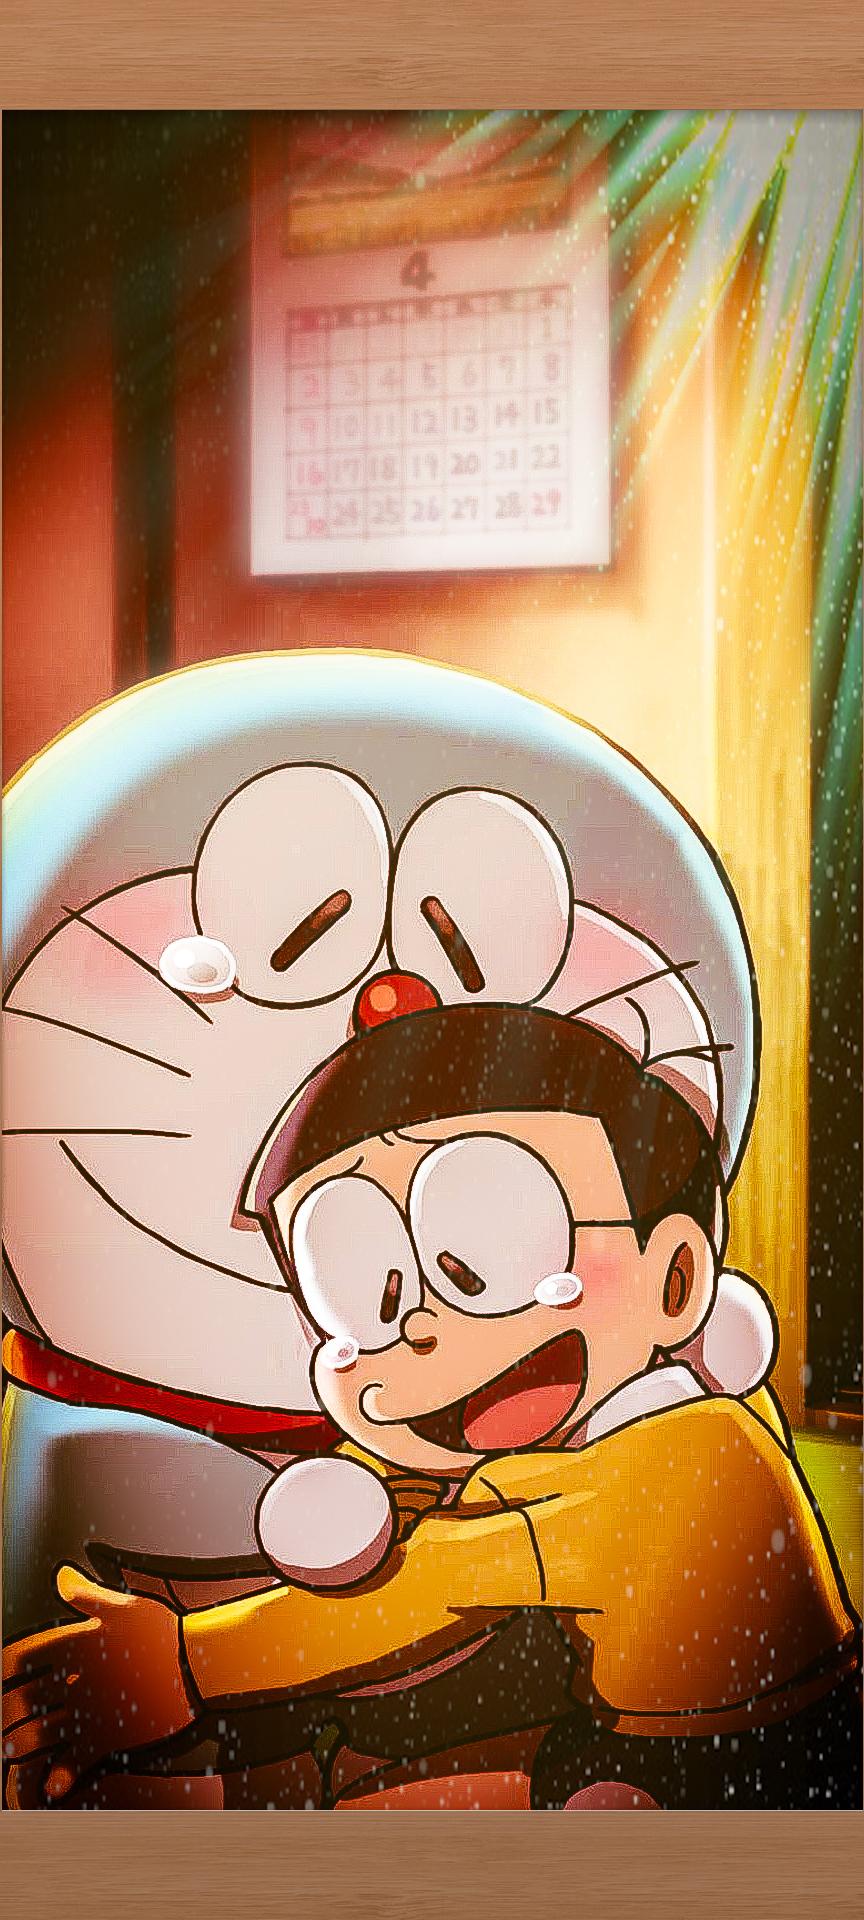 Doraemon and Nobita.jpg